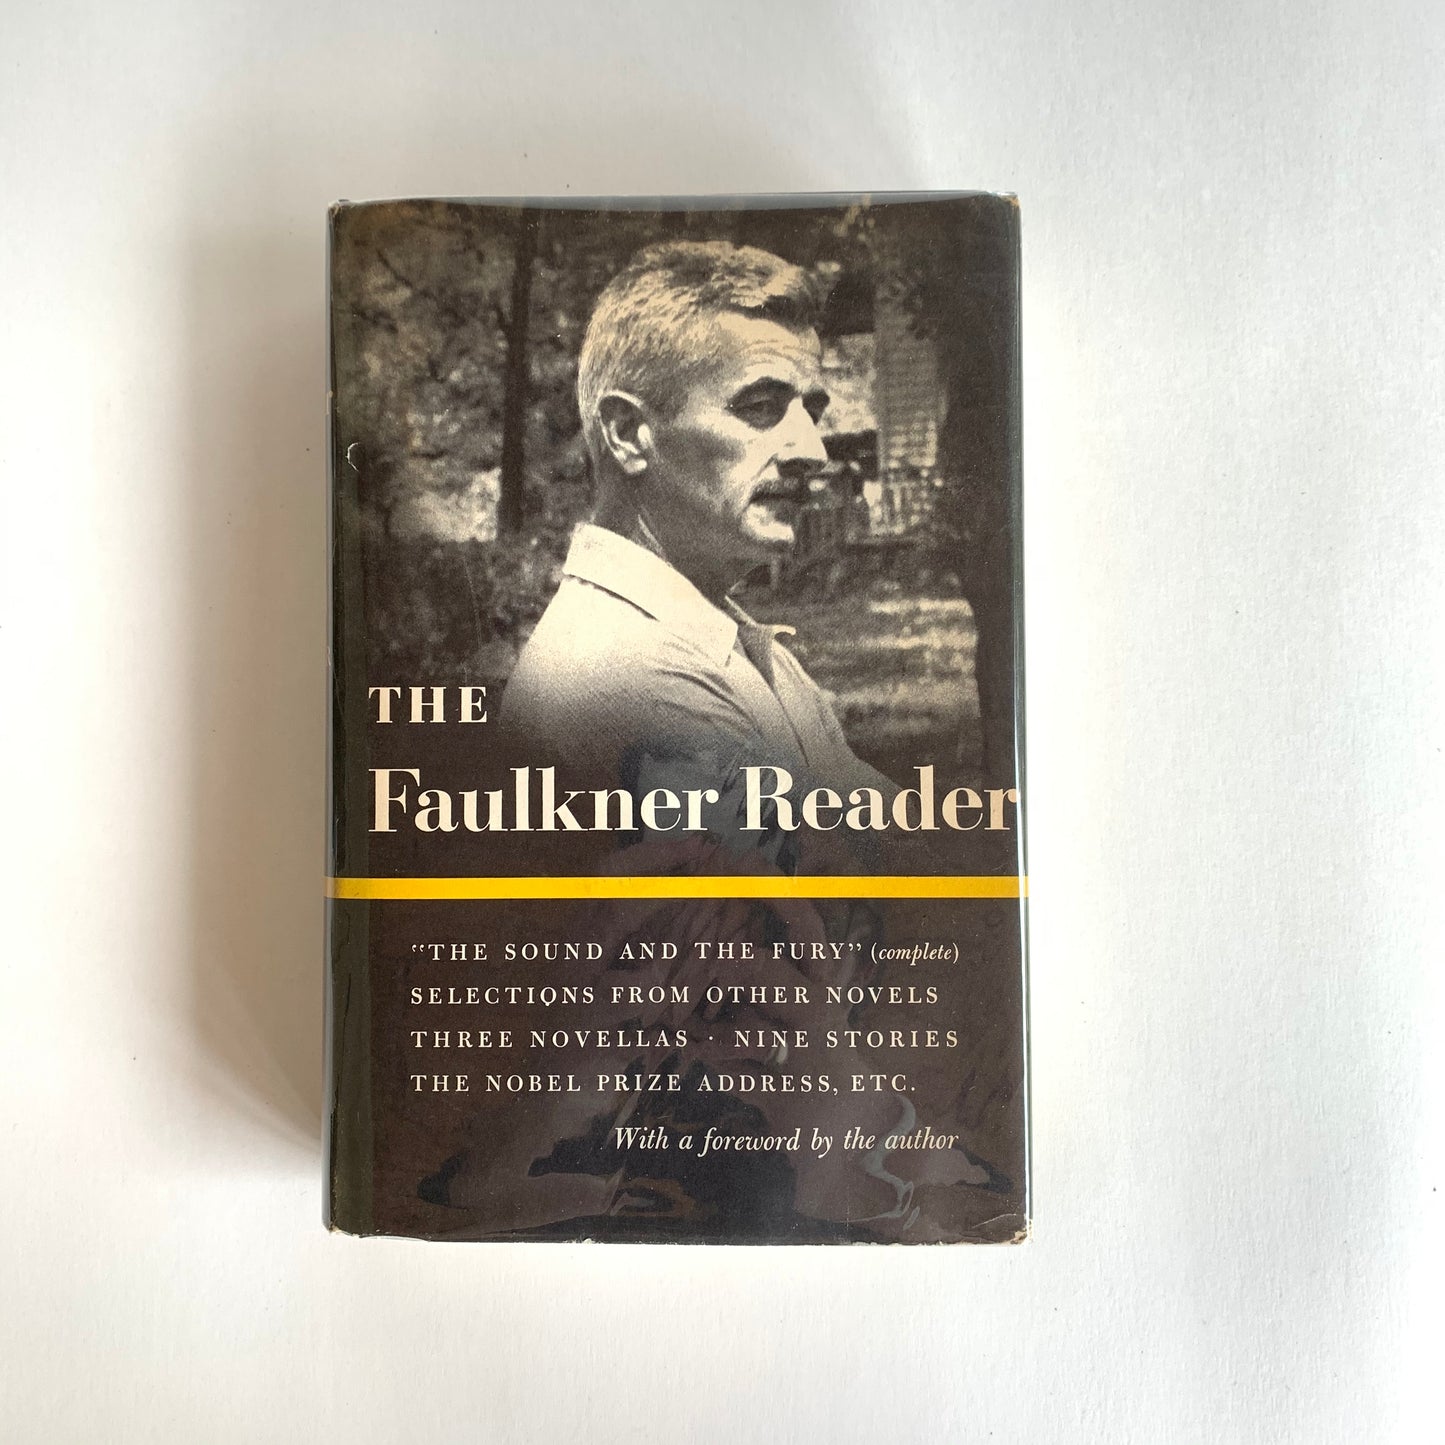 Vintage Book- The Faulkner Reader by William Faulkner